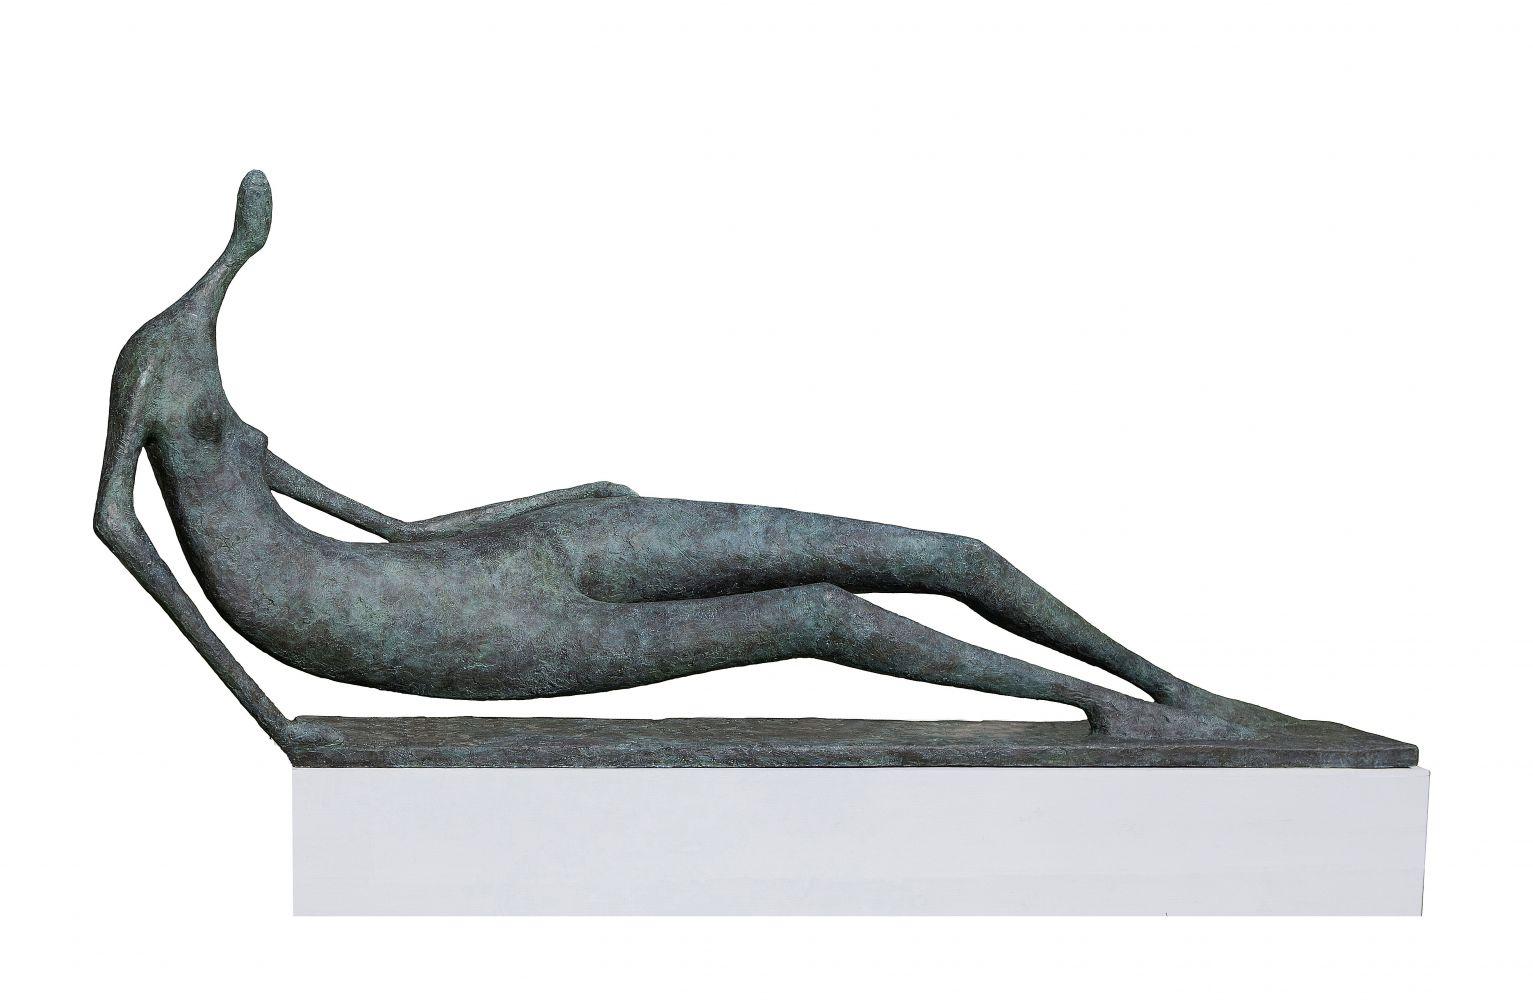 Monumental Lying Figure est une sculpture en bronze de l'artiste contemporain français Pierre Yermia, dont les dimensions sont de 110 × 310 × 60 cm (43,3 × 122 × 23,6 in).  
La sculpture est signée et numérotée, elle fait partie d'une édition